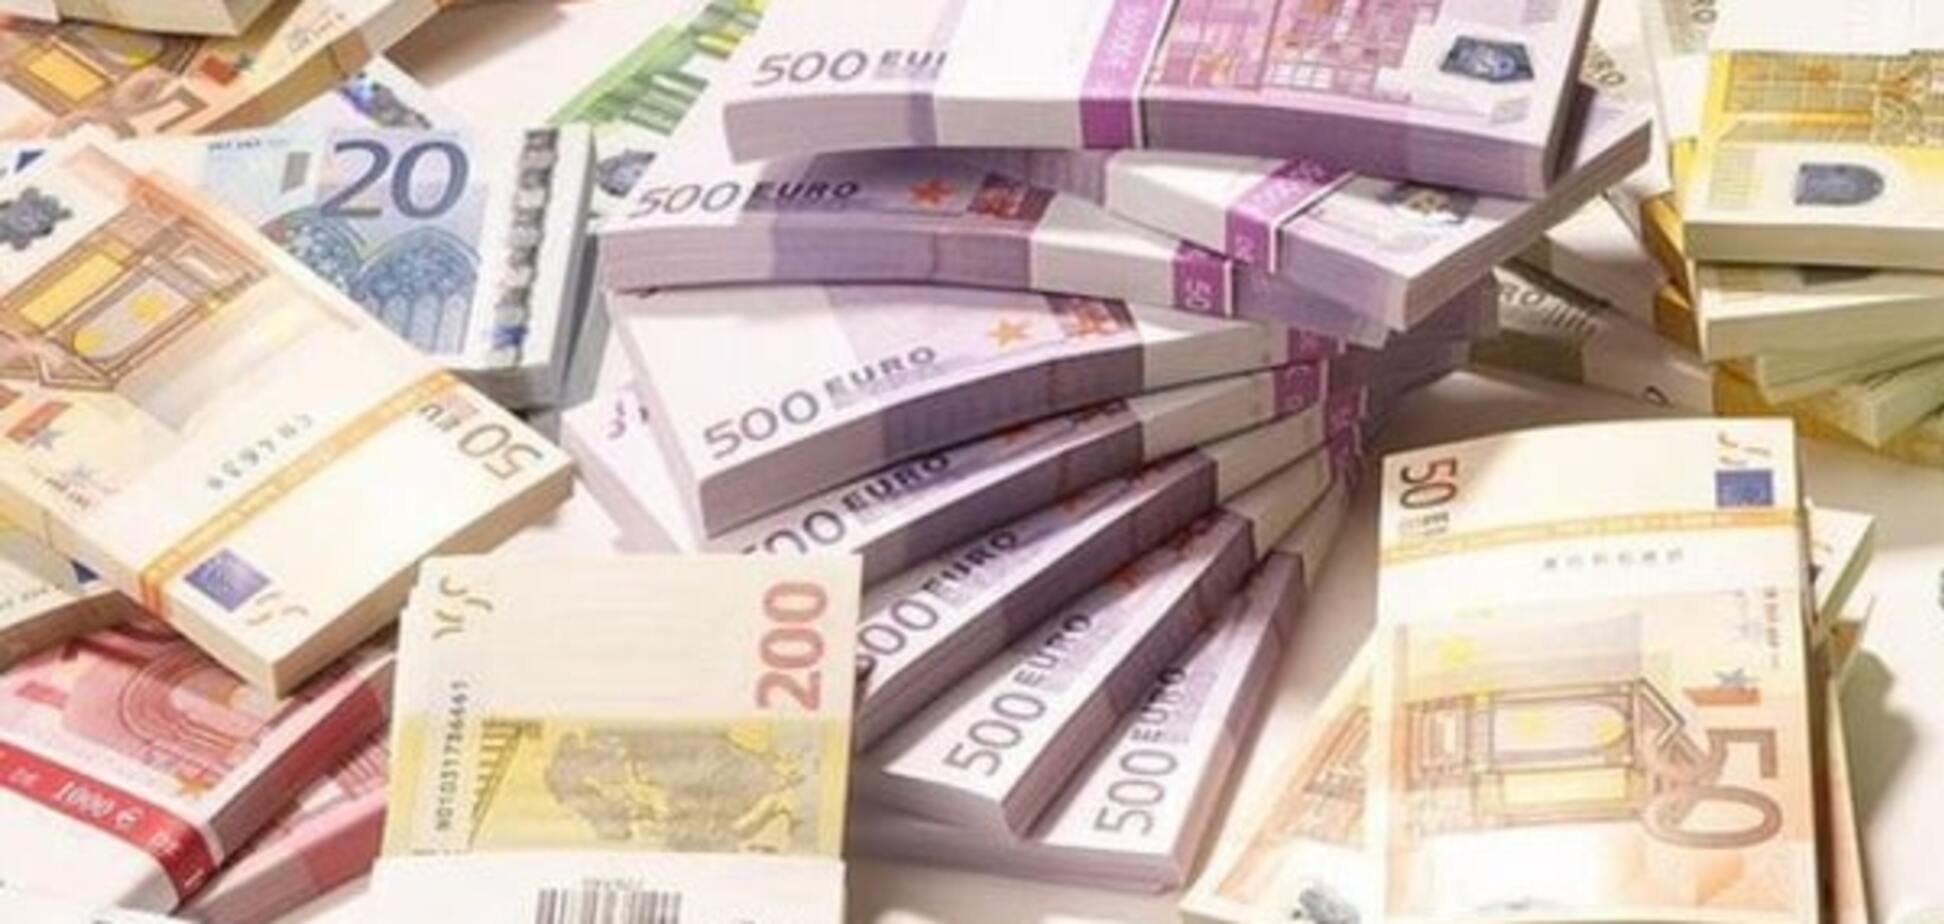 Дожили: у полицейских вымогали взятку 6 тыс. евро за 'компрометирующие видео'